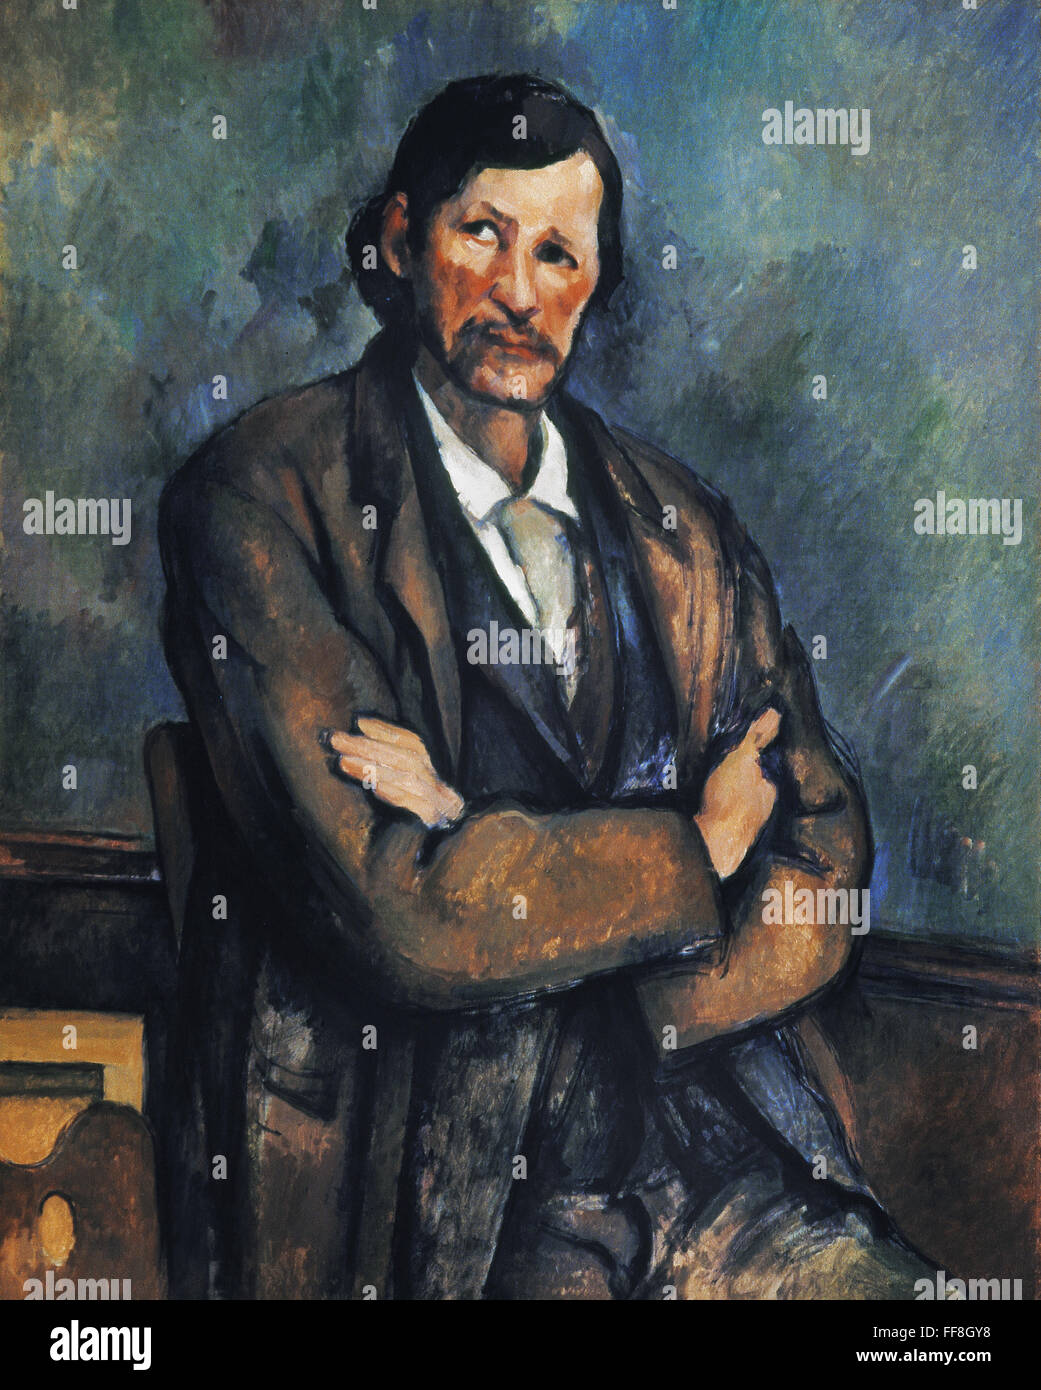 CEZANNE: Mann, c1899. /nMan mit Armen gekreuzt. Leinwand, c1899, von Paul Cezanne. Stockfoto